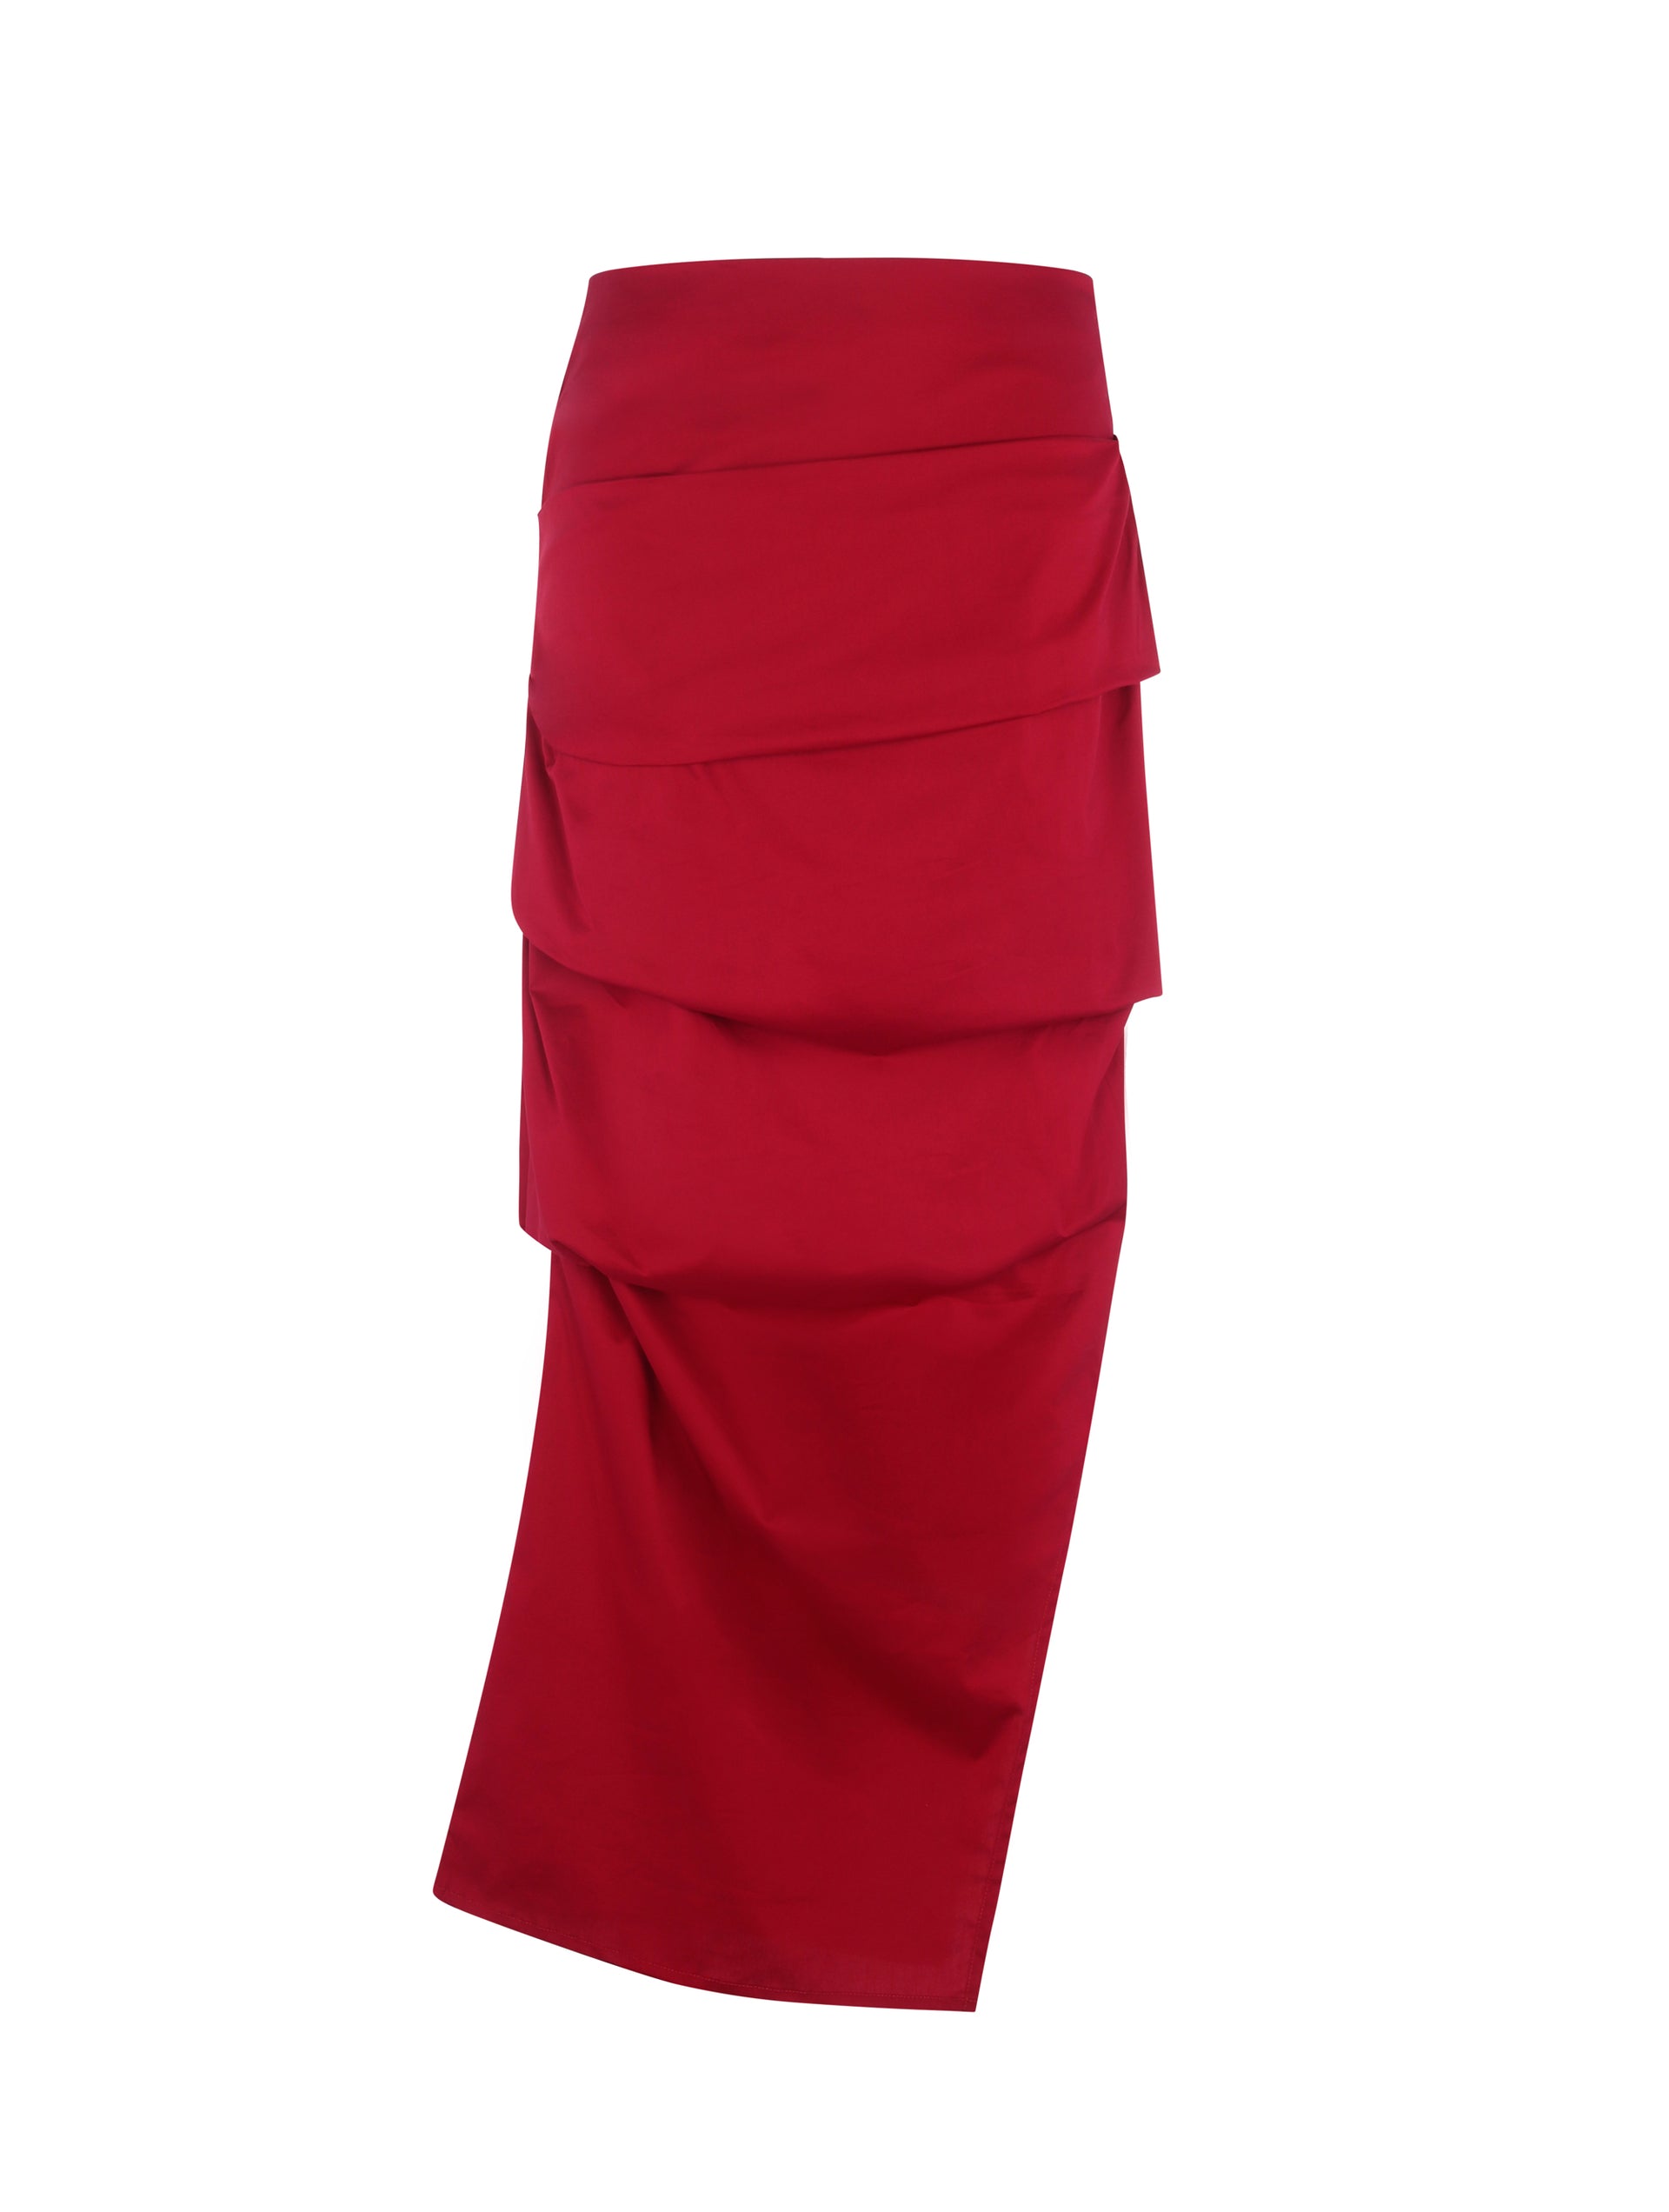 Alba Skirt - Red